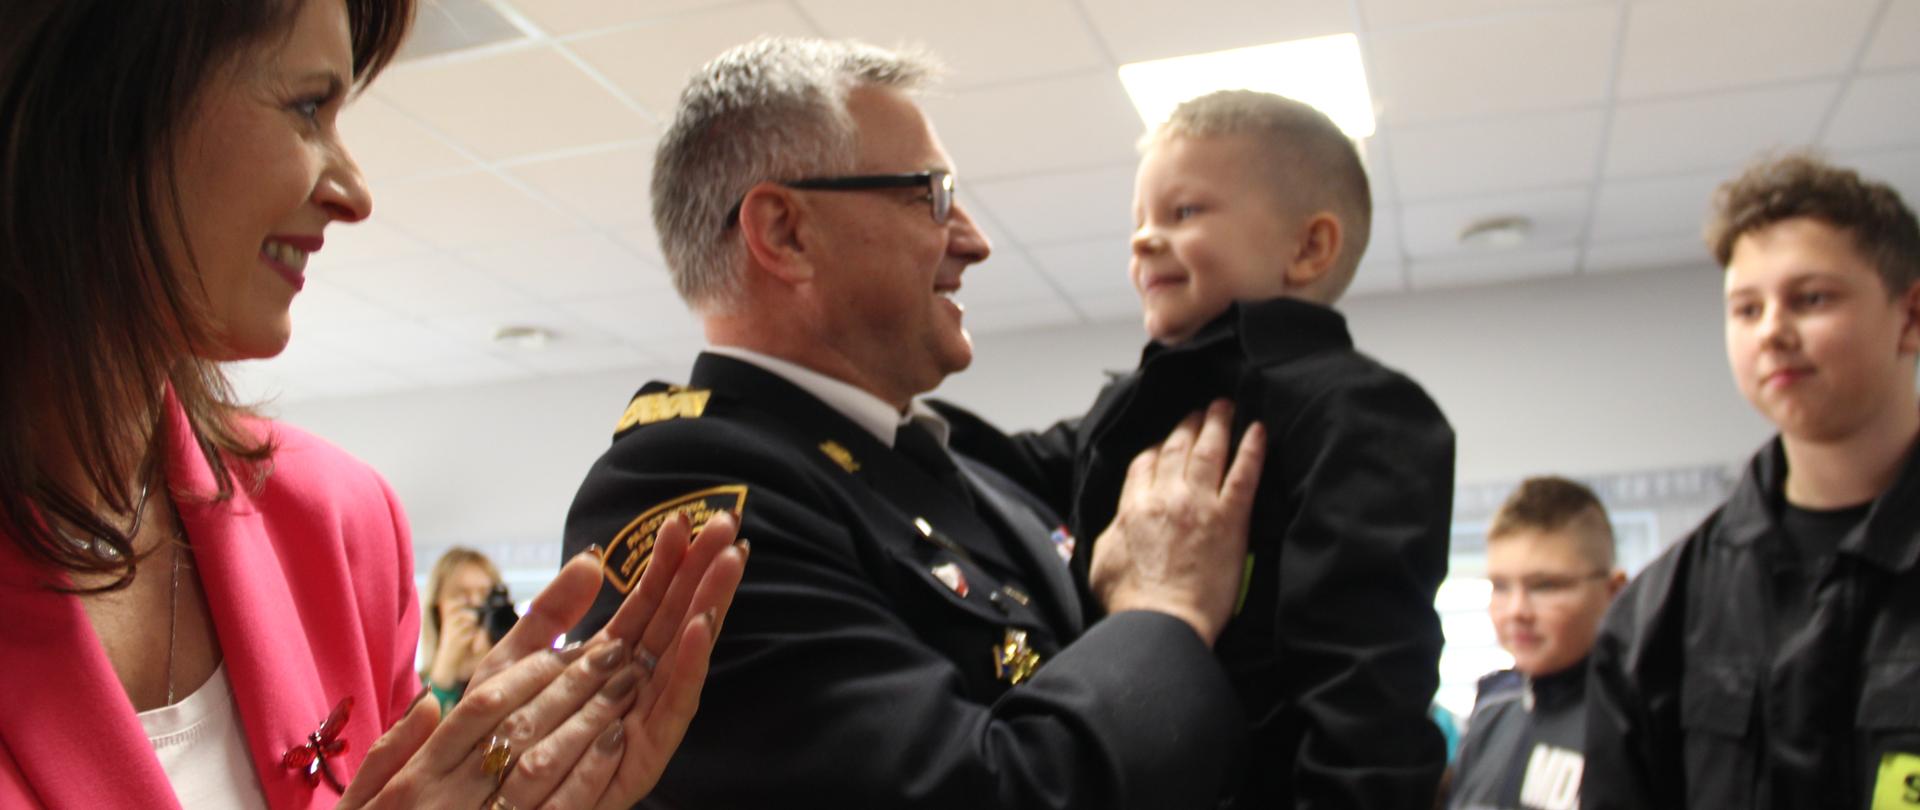 Komendant wojewodzki, w mundurze wyjściowym, trzyma na ręku kilkuletniego chłopca w mundurku strażackim. Wokół zgromadzeni goscie uroczystości.